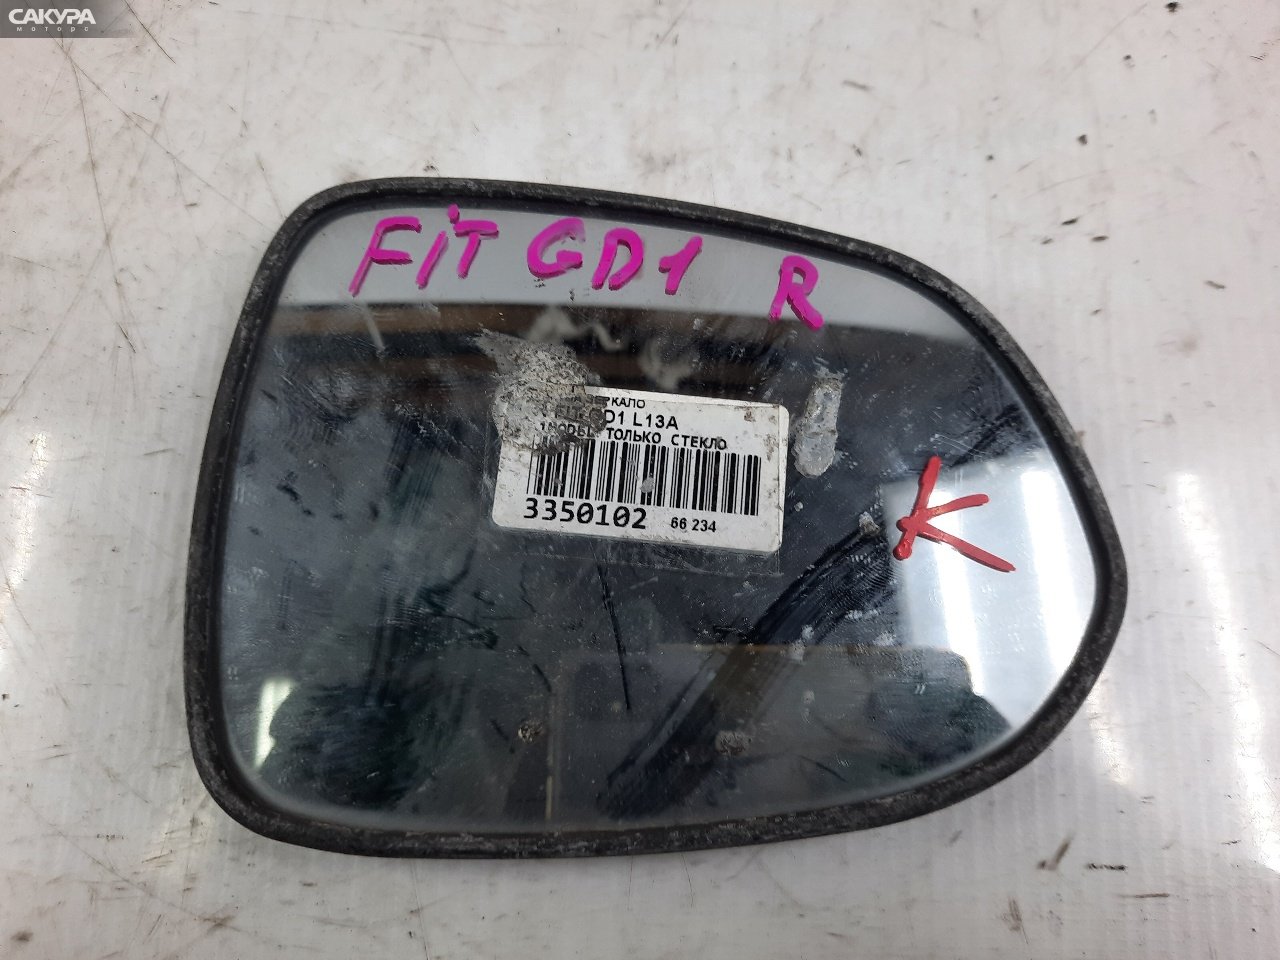 Зеркало боковое правое Honda FIT GD1 L13A: купить в Сакура Красноярск.